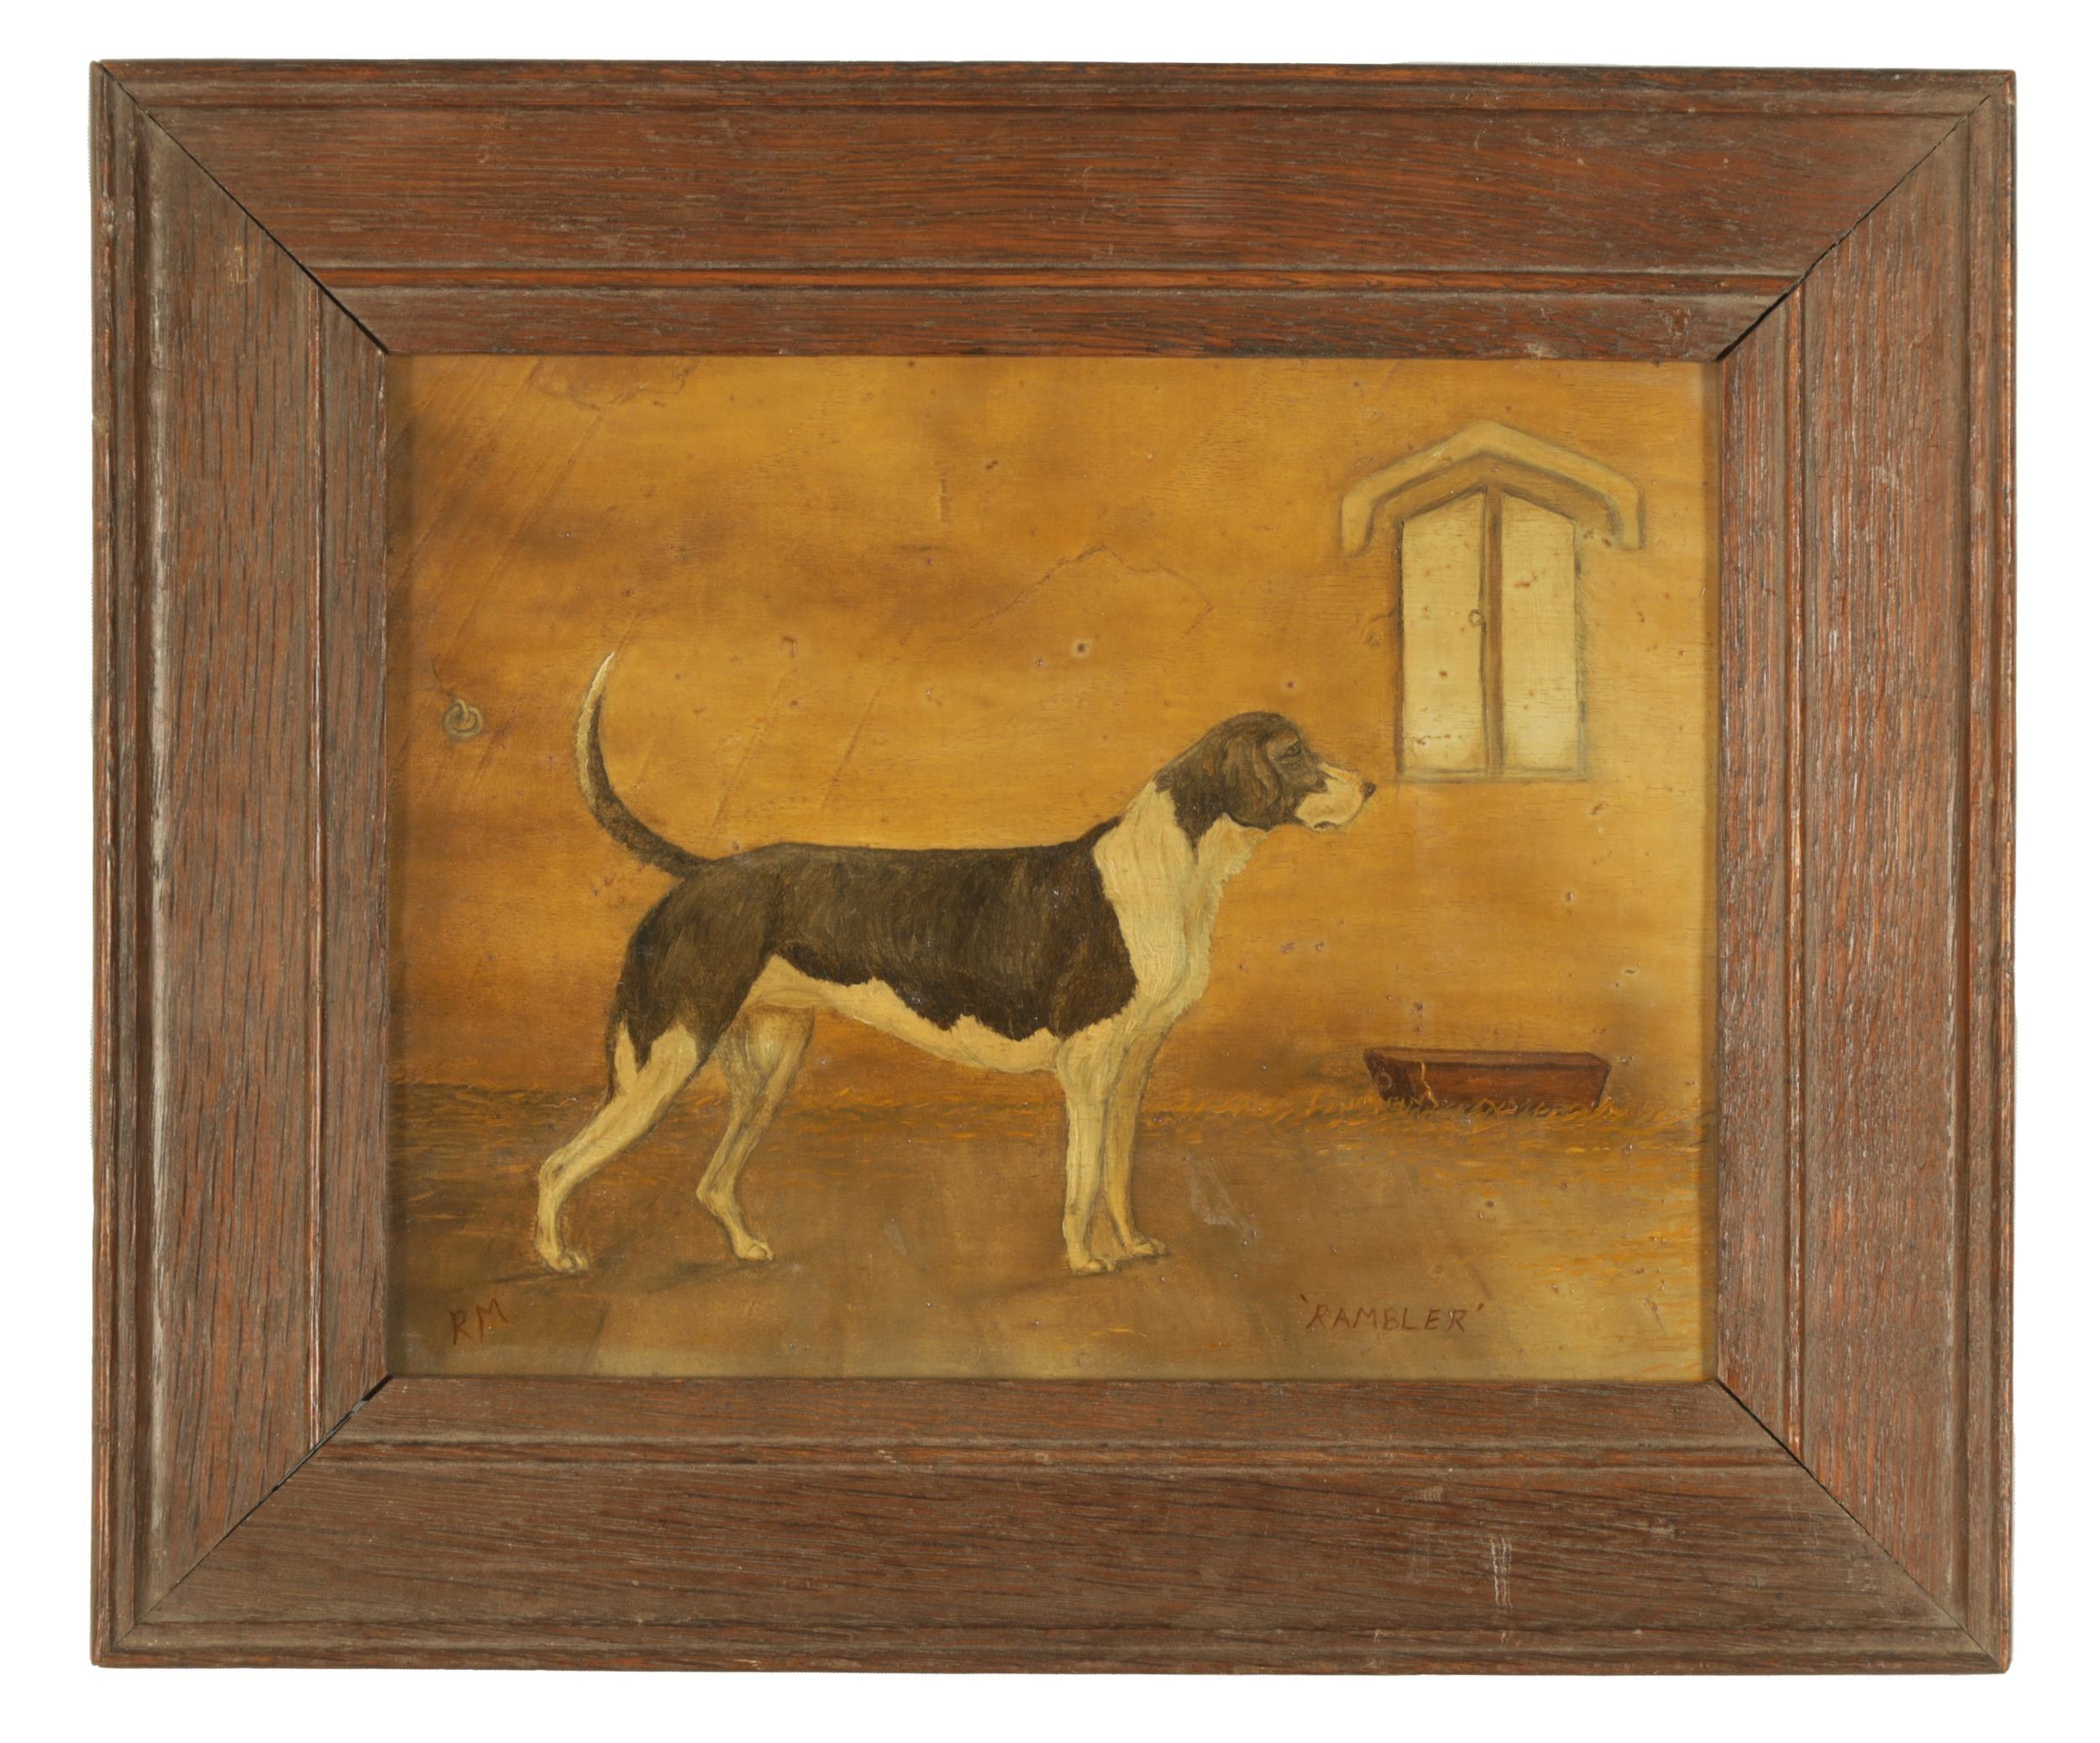 Animal Painting Antique British - Peinture à l'huile ancienne anglaise primitive représentant un chien dans un intérieur de ferme, signée